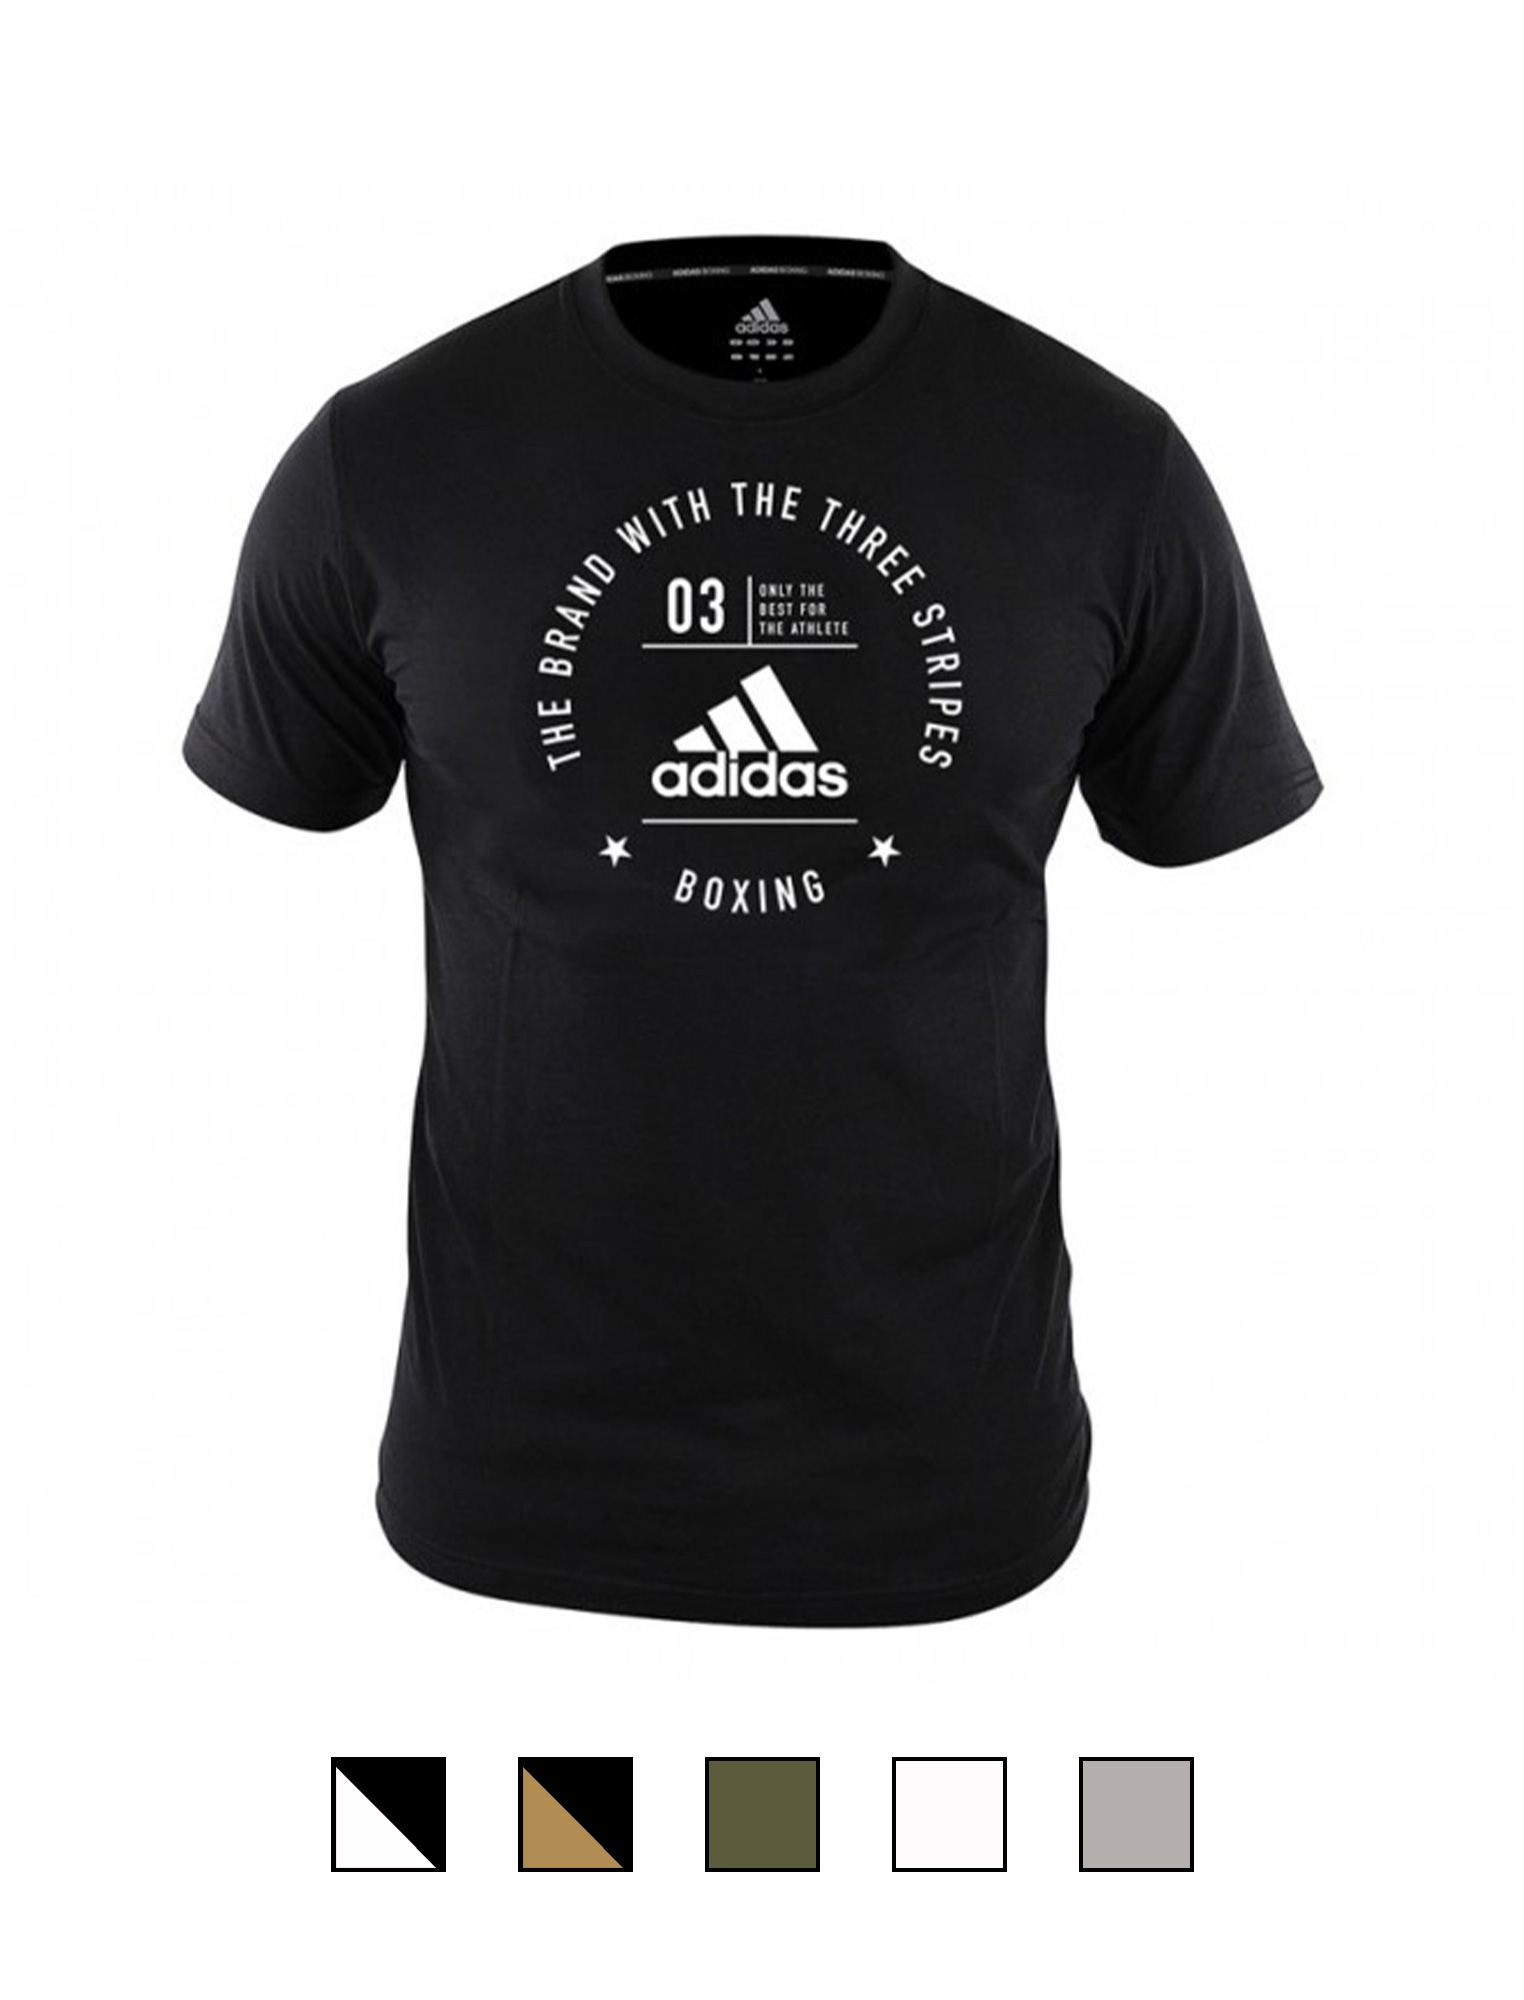 adidas Community T-Shirt "BOXING" black/white, adiCL01B